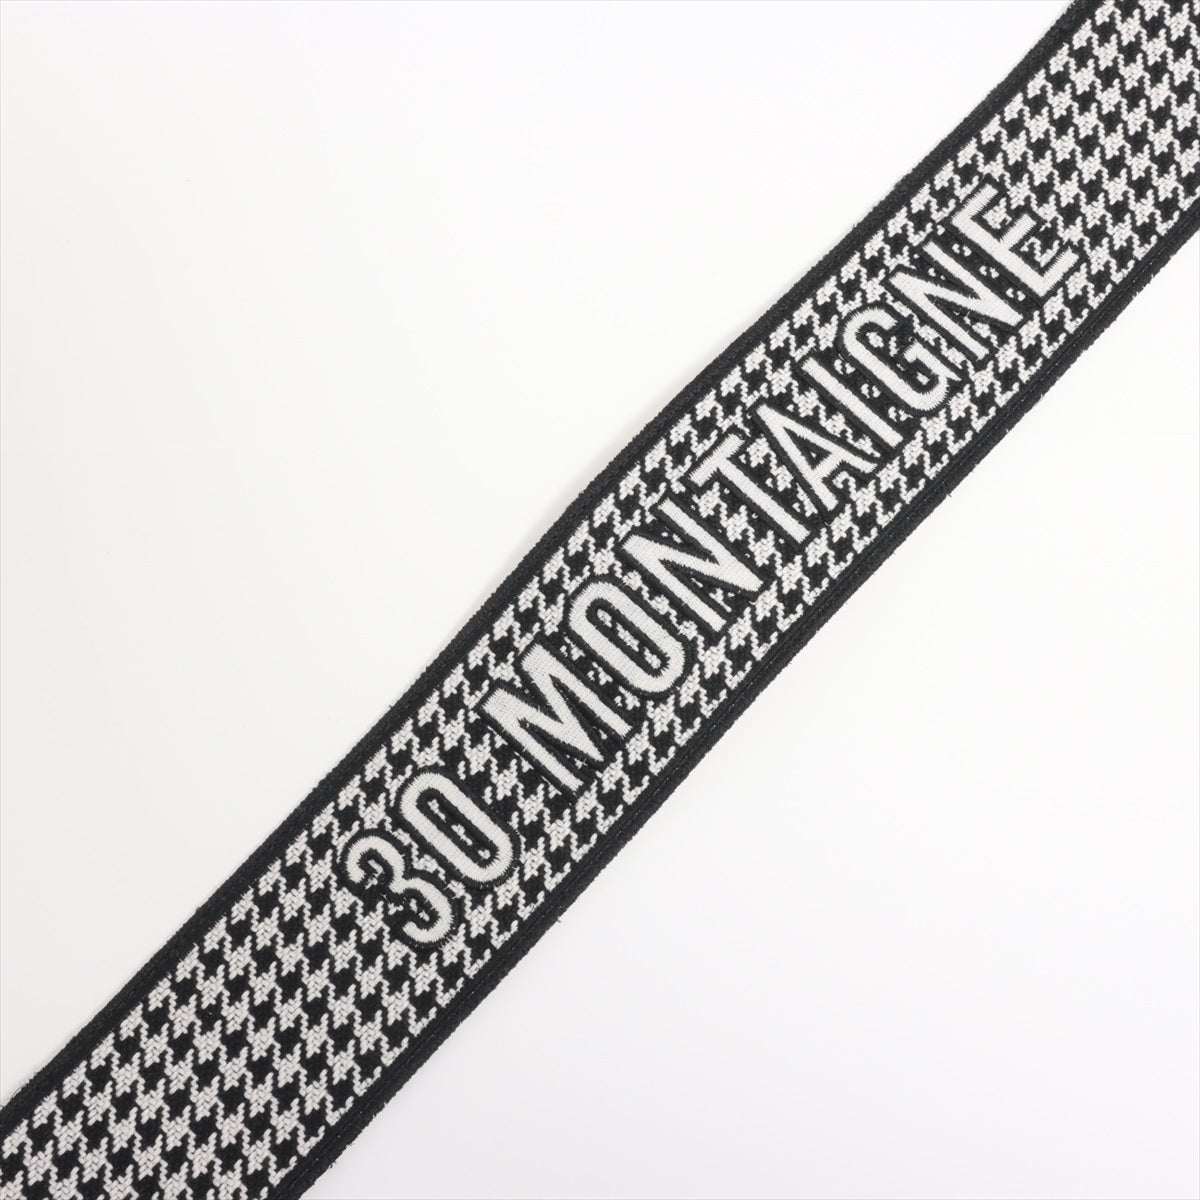 Dior 30 Montaigne 30 Montaigne Shoulder Strap Fabric Black x White Embroidery